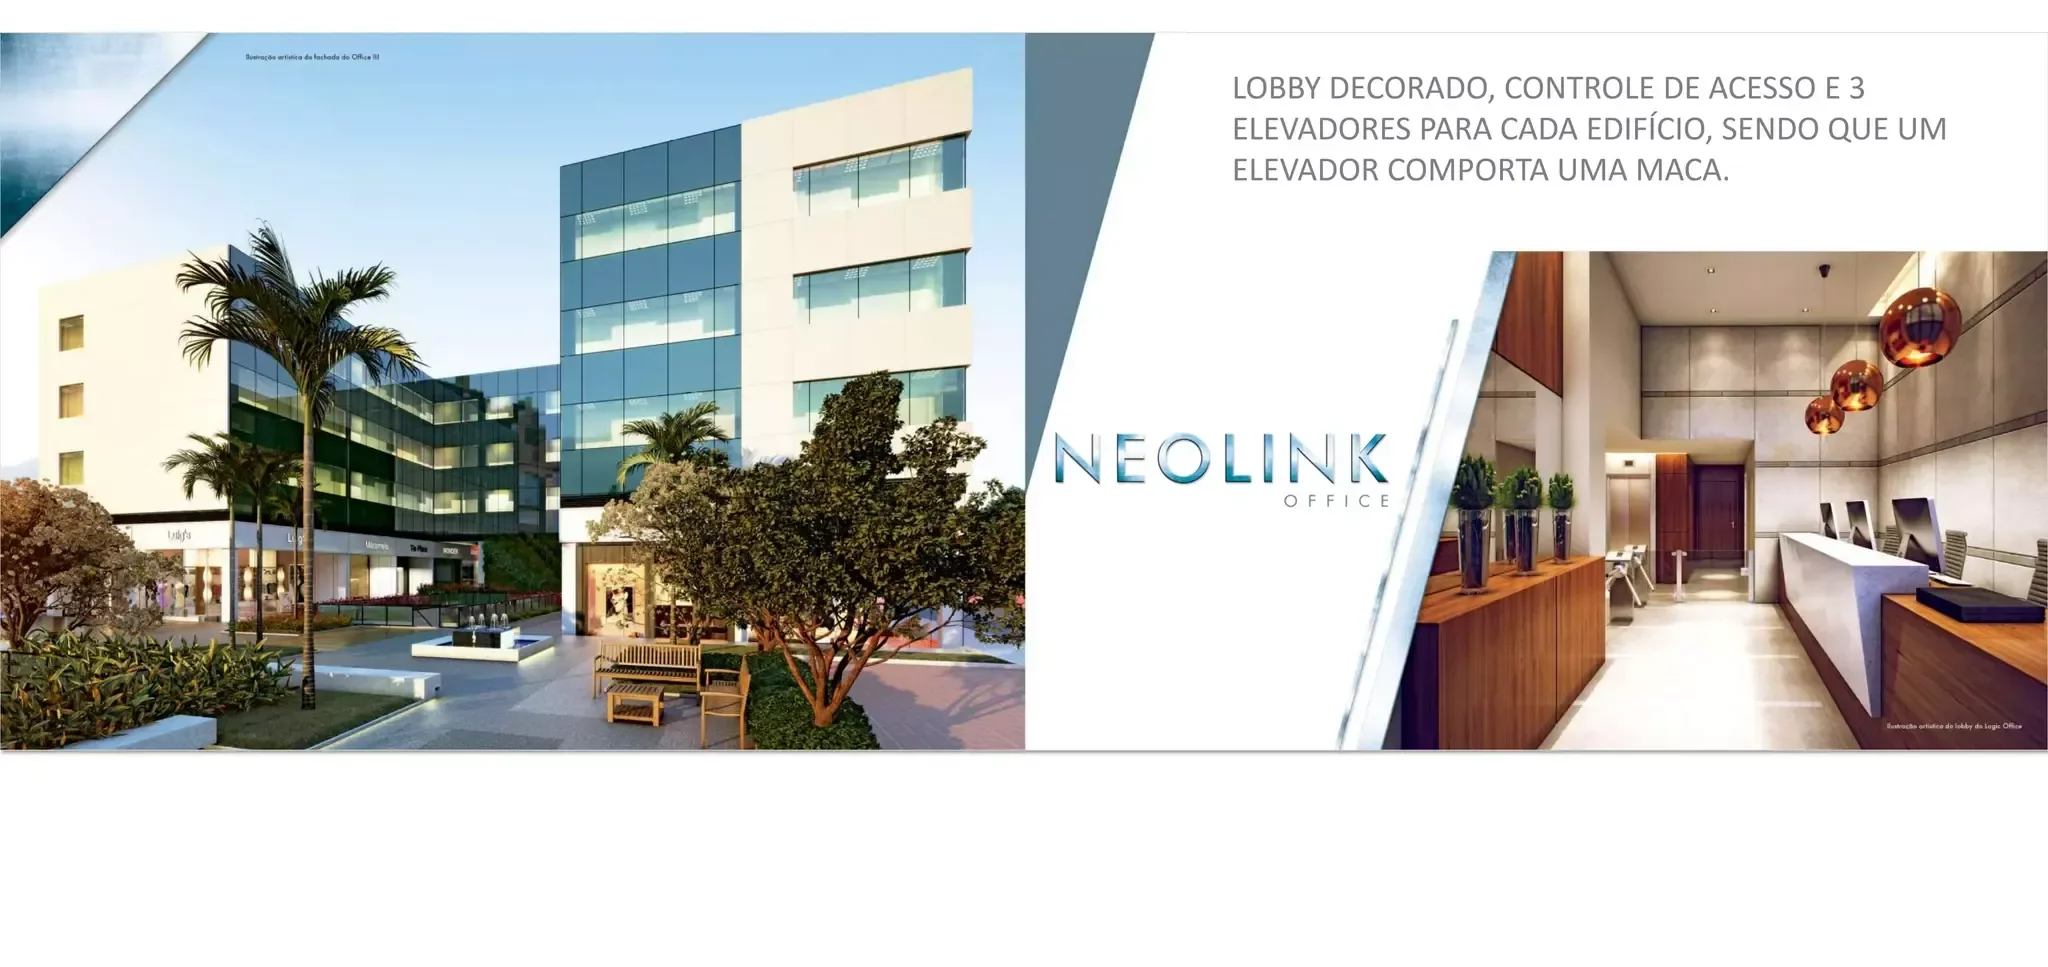 Neolink Office Mall Stay | Barra da Tijuca